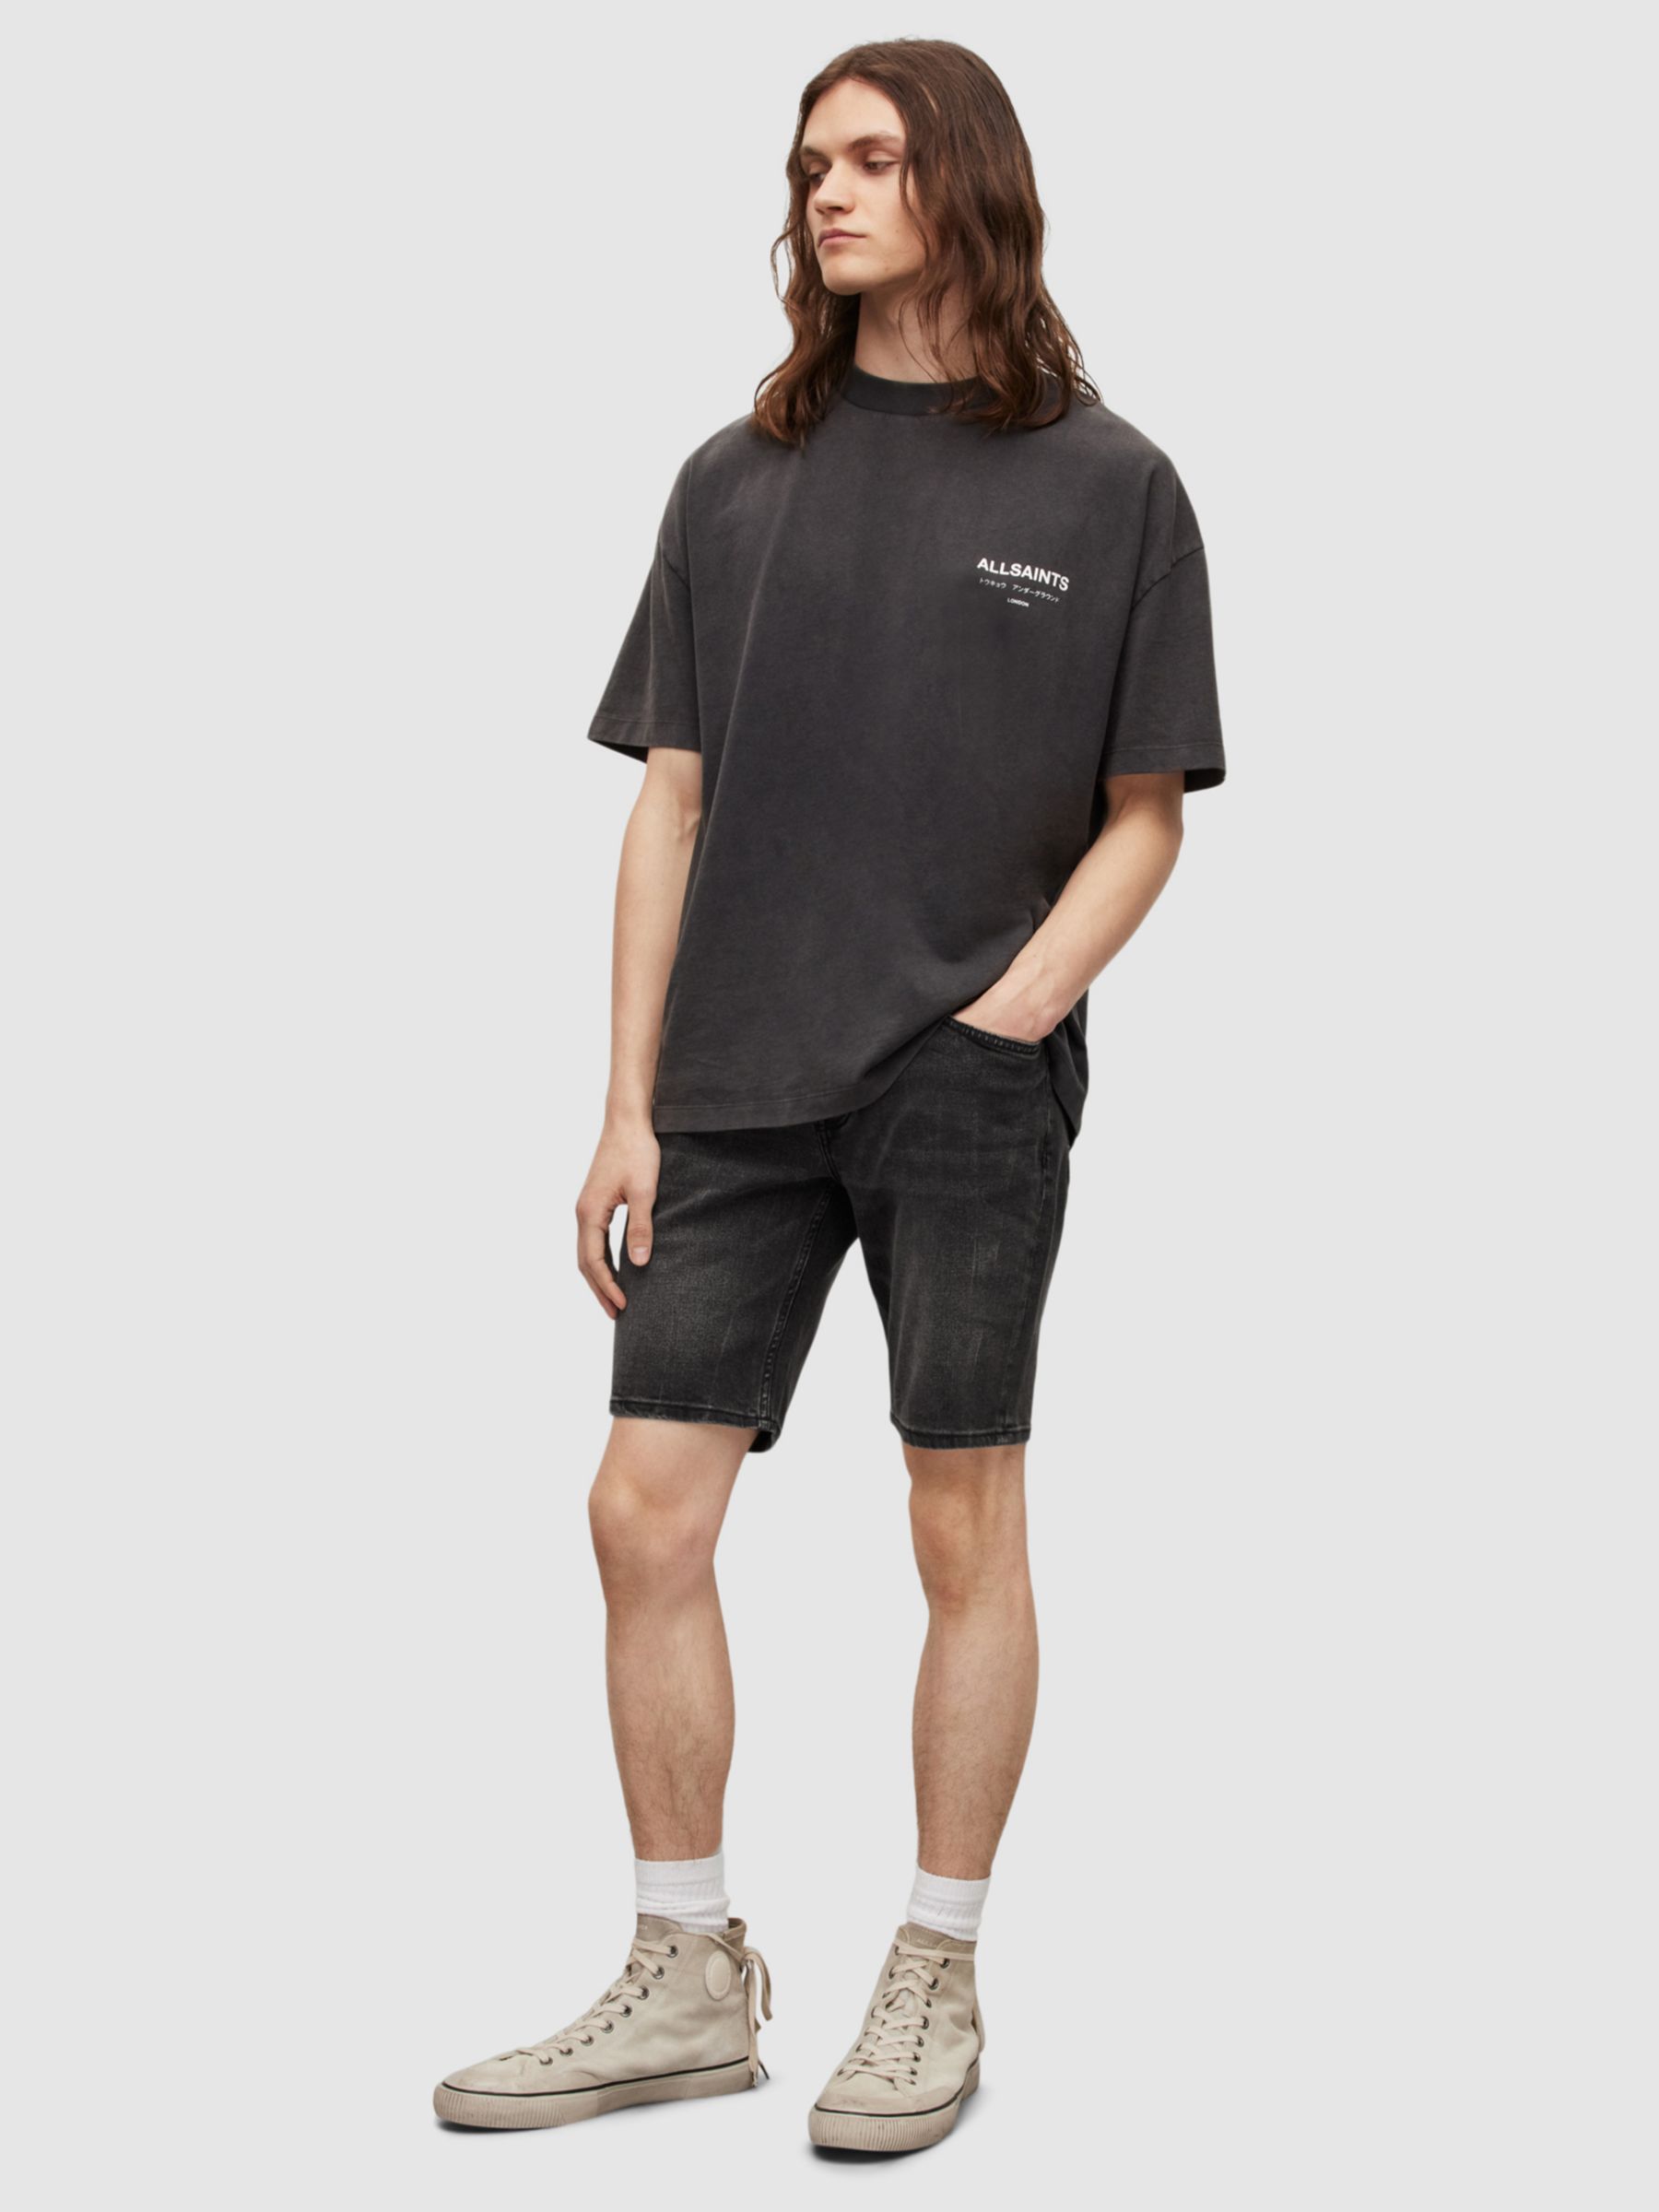 Buy AllSaints Switch Denim Slim Fit Shorts, Washed Black Online at johnlewis.com